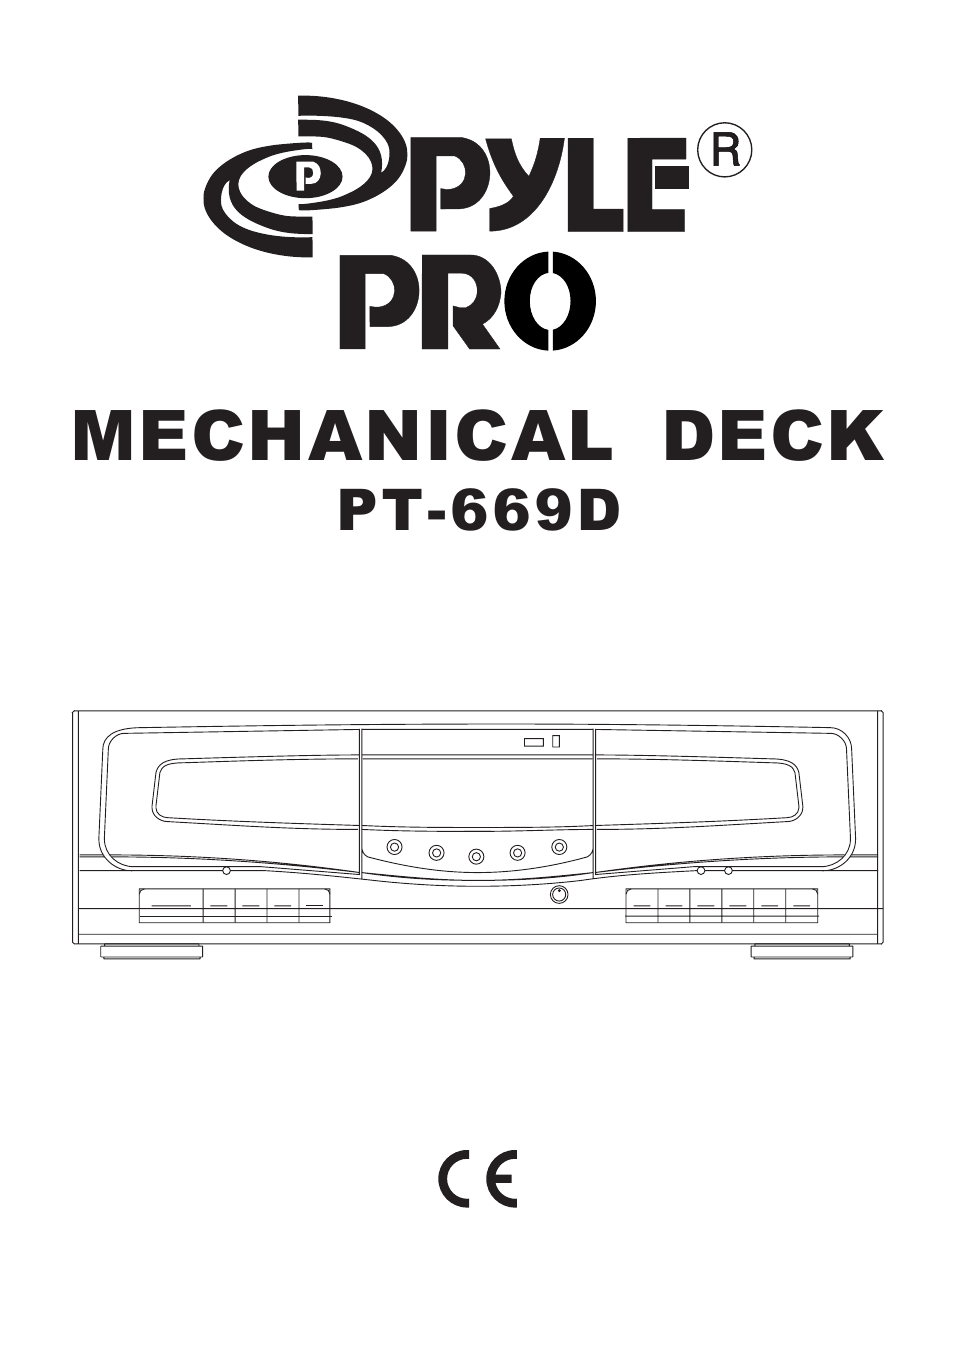 Mechanical Deck PT-669D